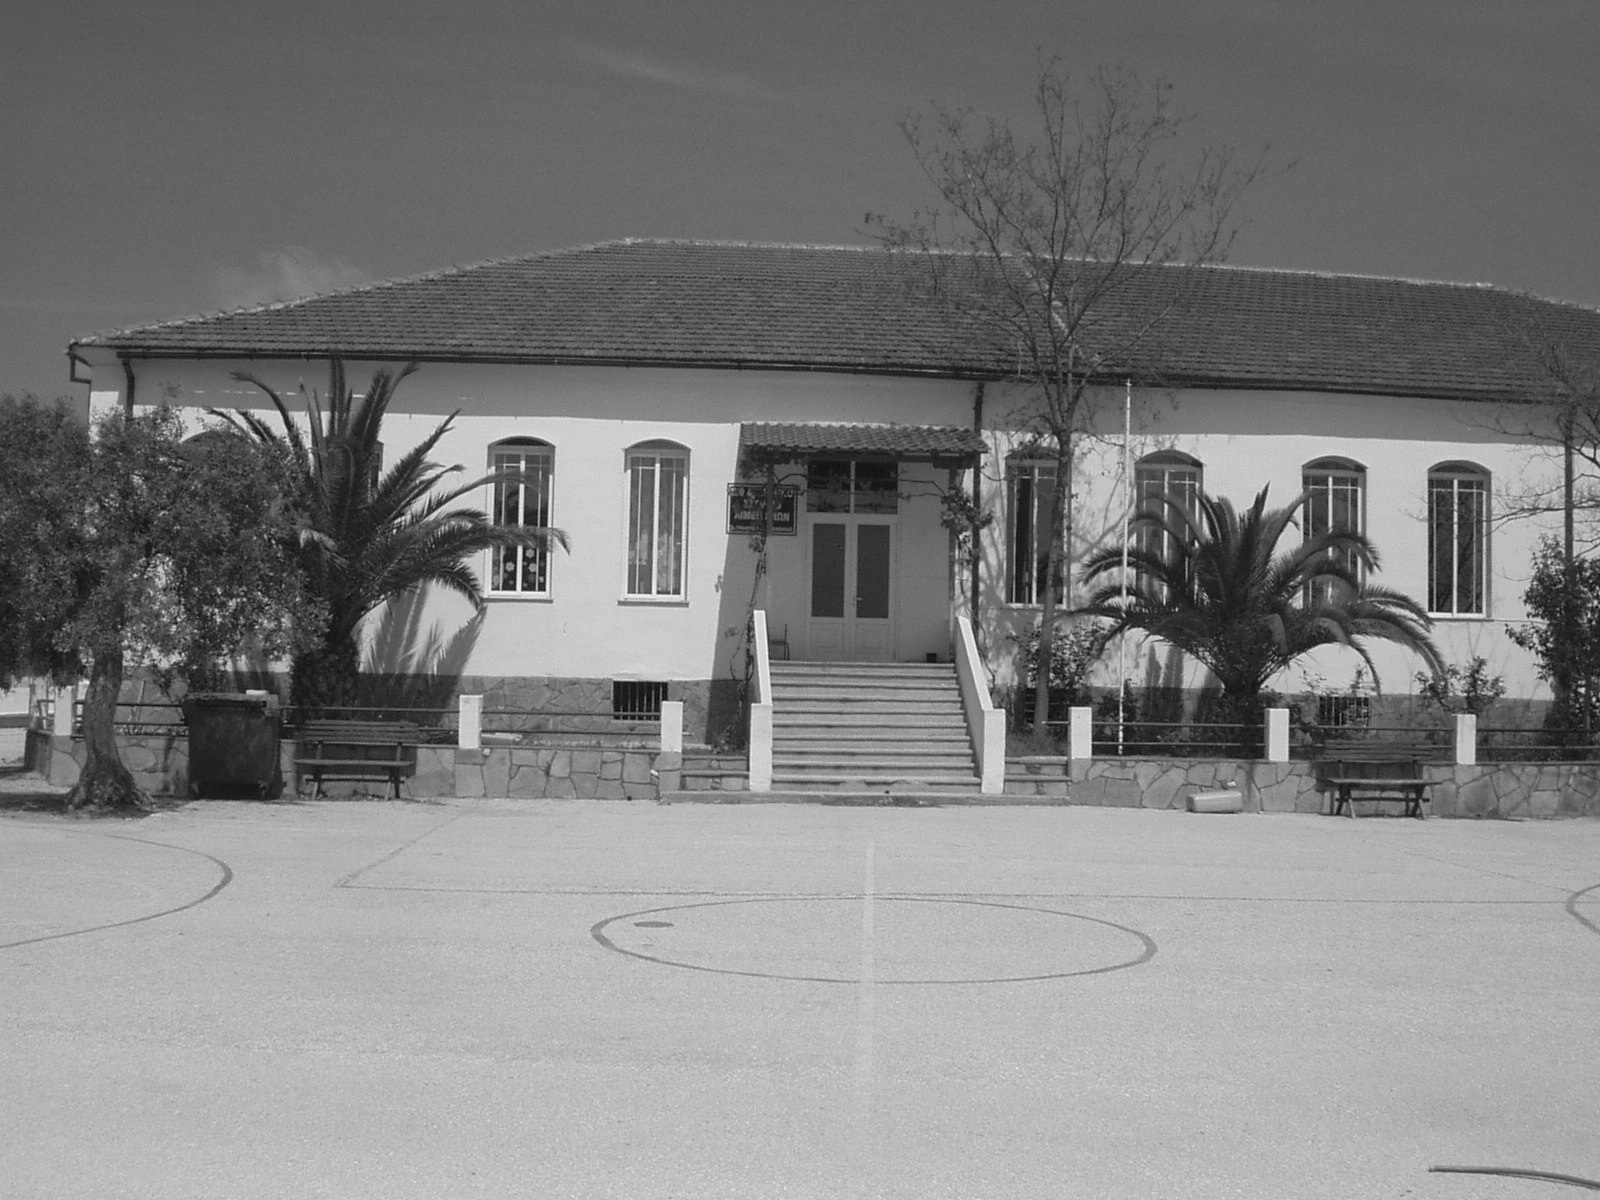 Εικόνα 19α. Το ενιαίο δηµοτικό σχολείο Κάστρου Λιµεναρίων στη δεκαετία του 30 (Φωτογραφικό αρχείο πολιτιστικού συλλόγου Λιµεναρίων «Το Κάστρο»). Εικόνα 19β.